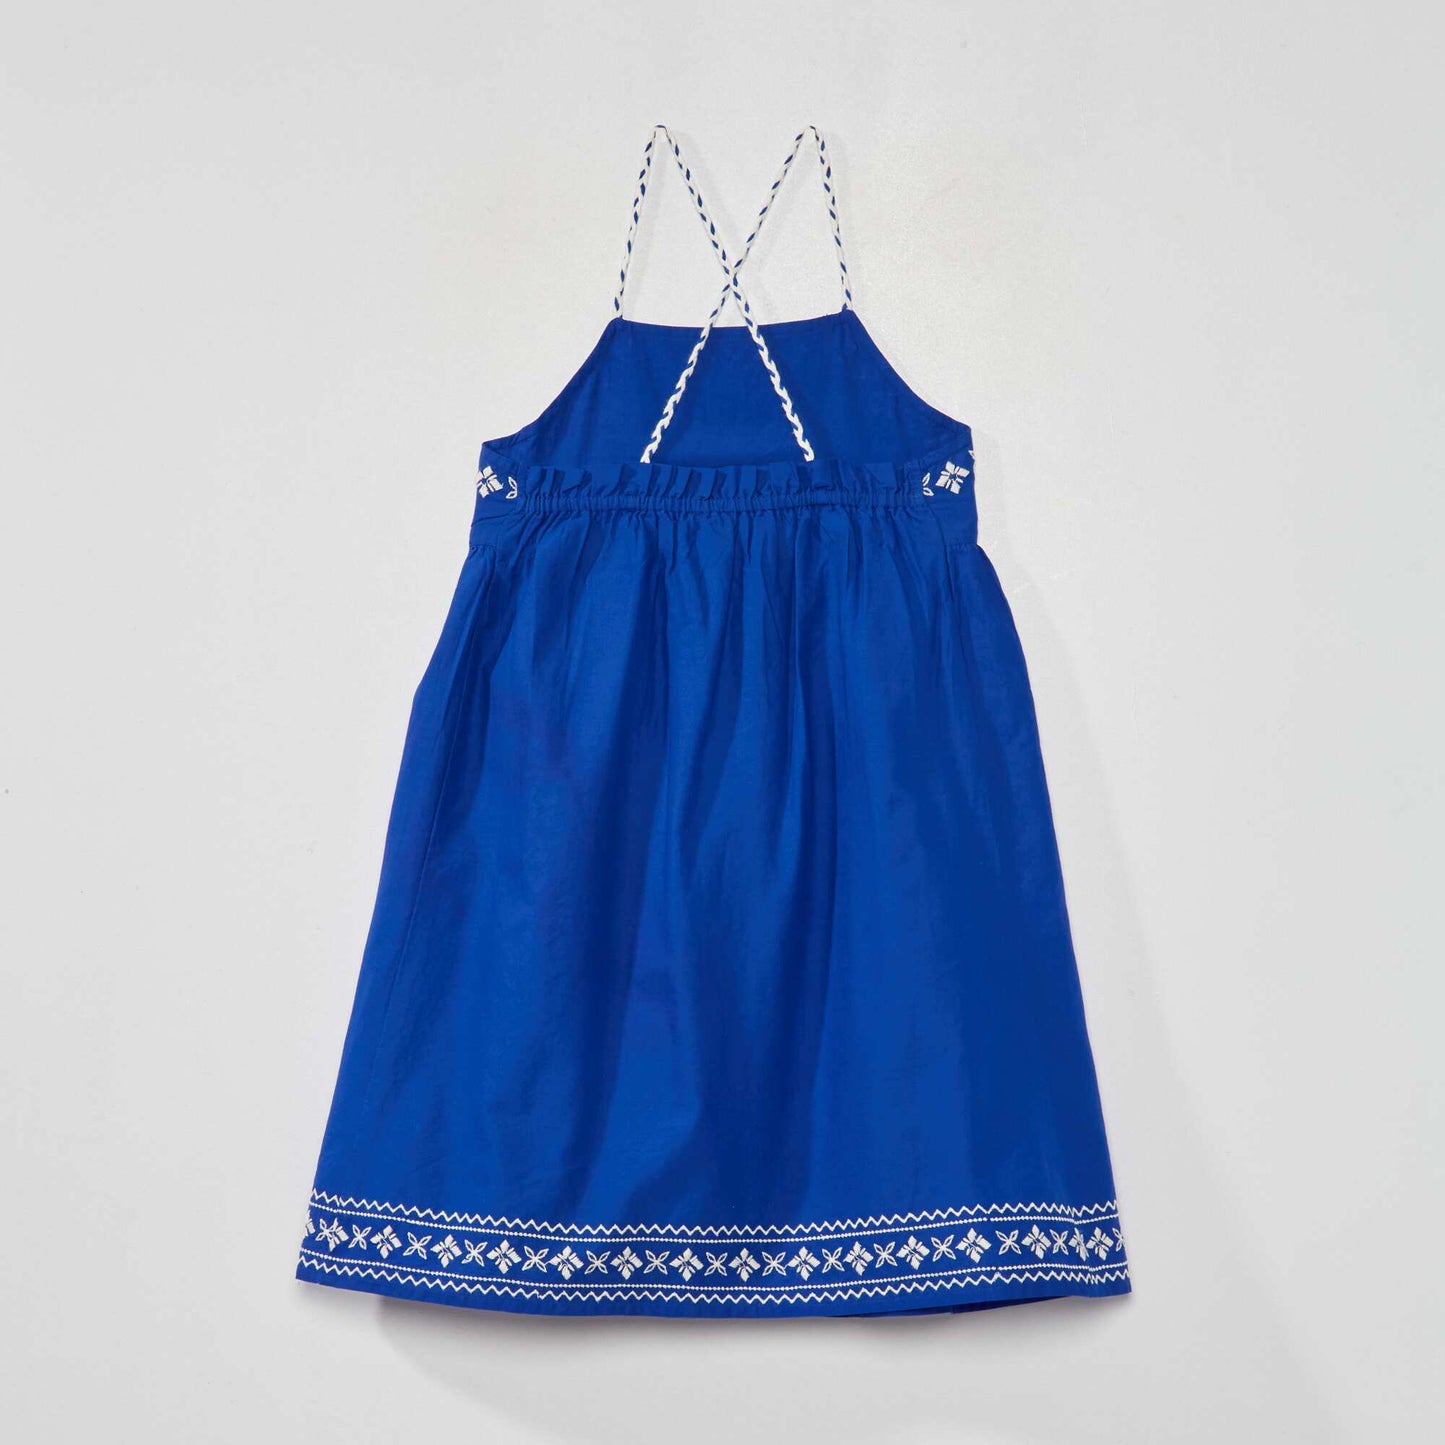 Embroidered full-skirt dress blue/white